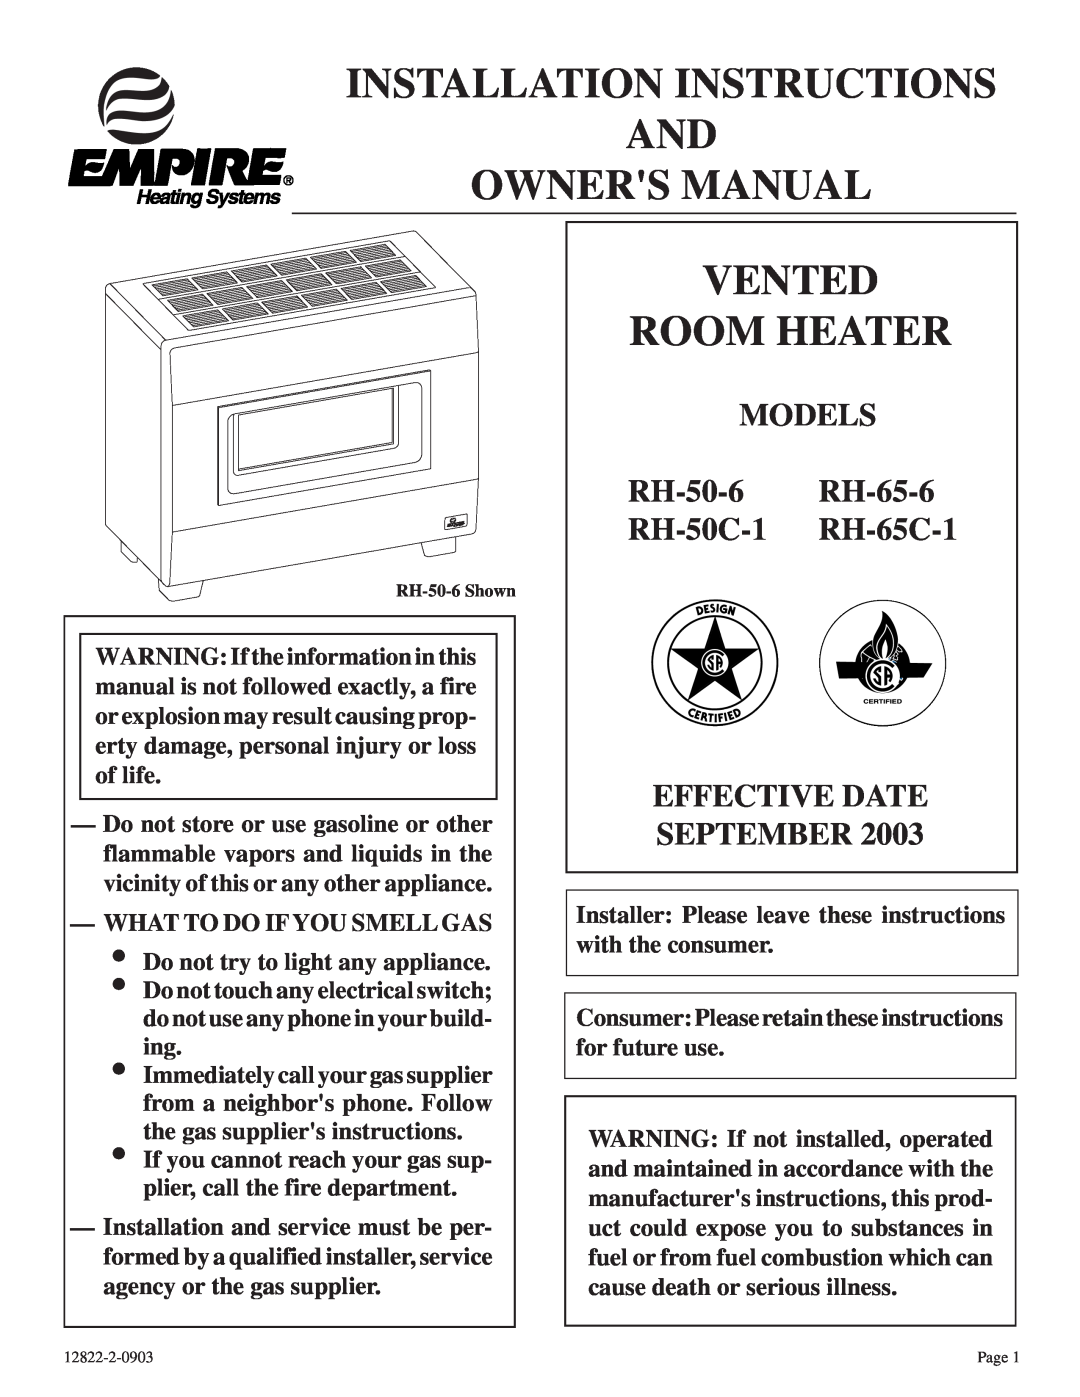 Empire Comfort Systems RH50C-1 installation instructions Vented Room Heater, MODELS RH-50-6 RH-65-6 RH-50C-1 RH-65C-1 